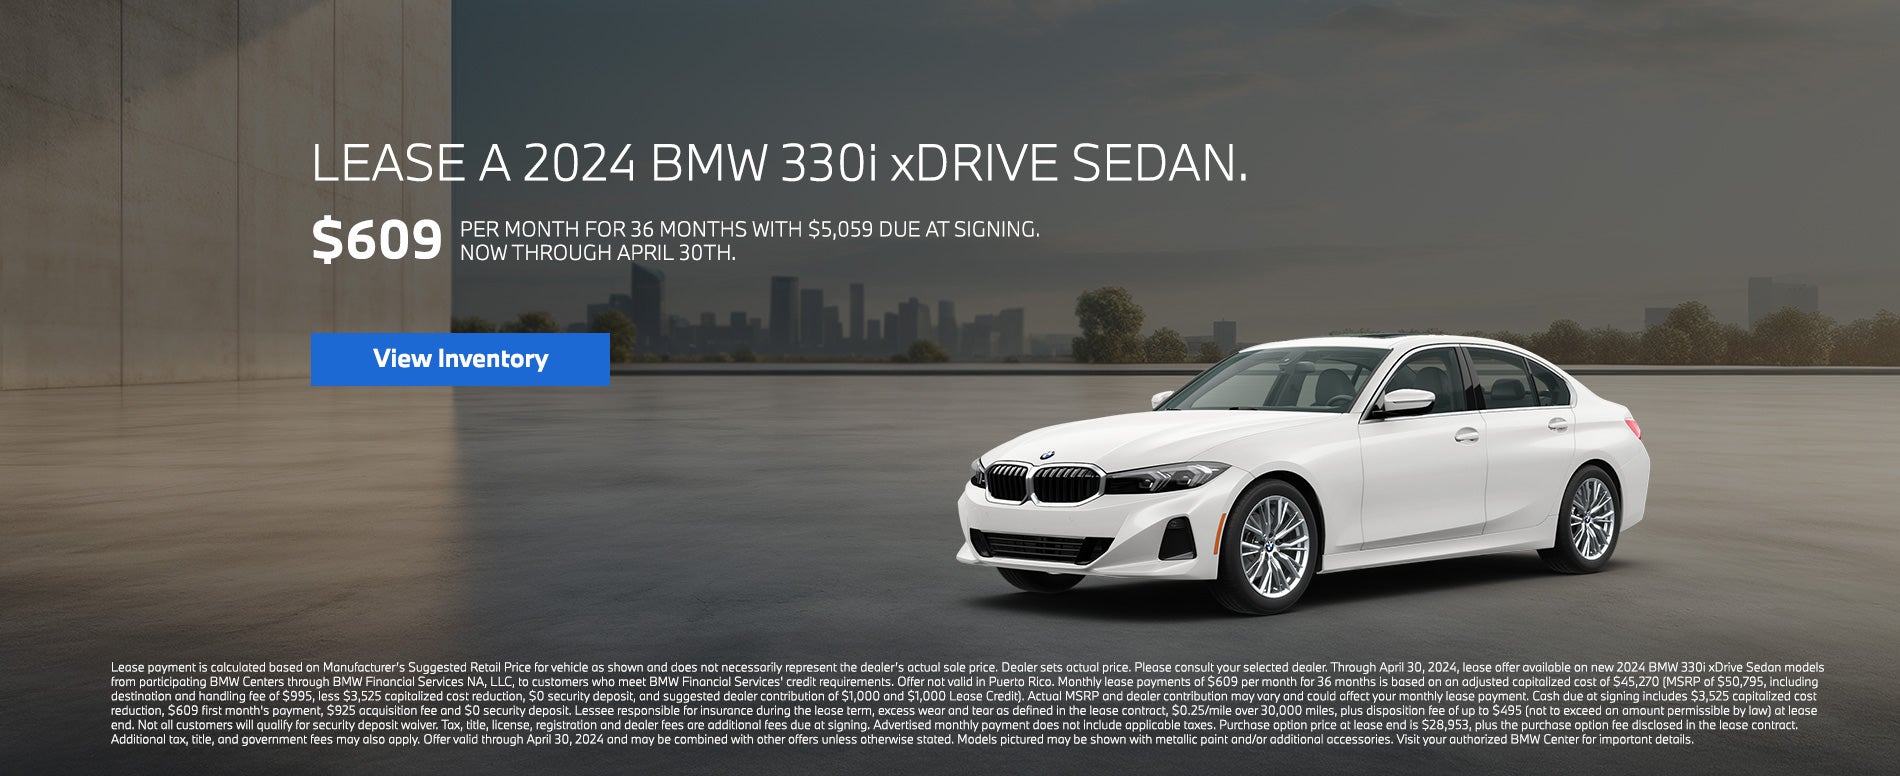 Lease a 2024 BMW 330i xDrive Sedean.